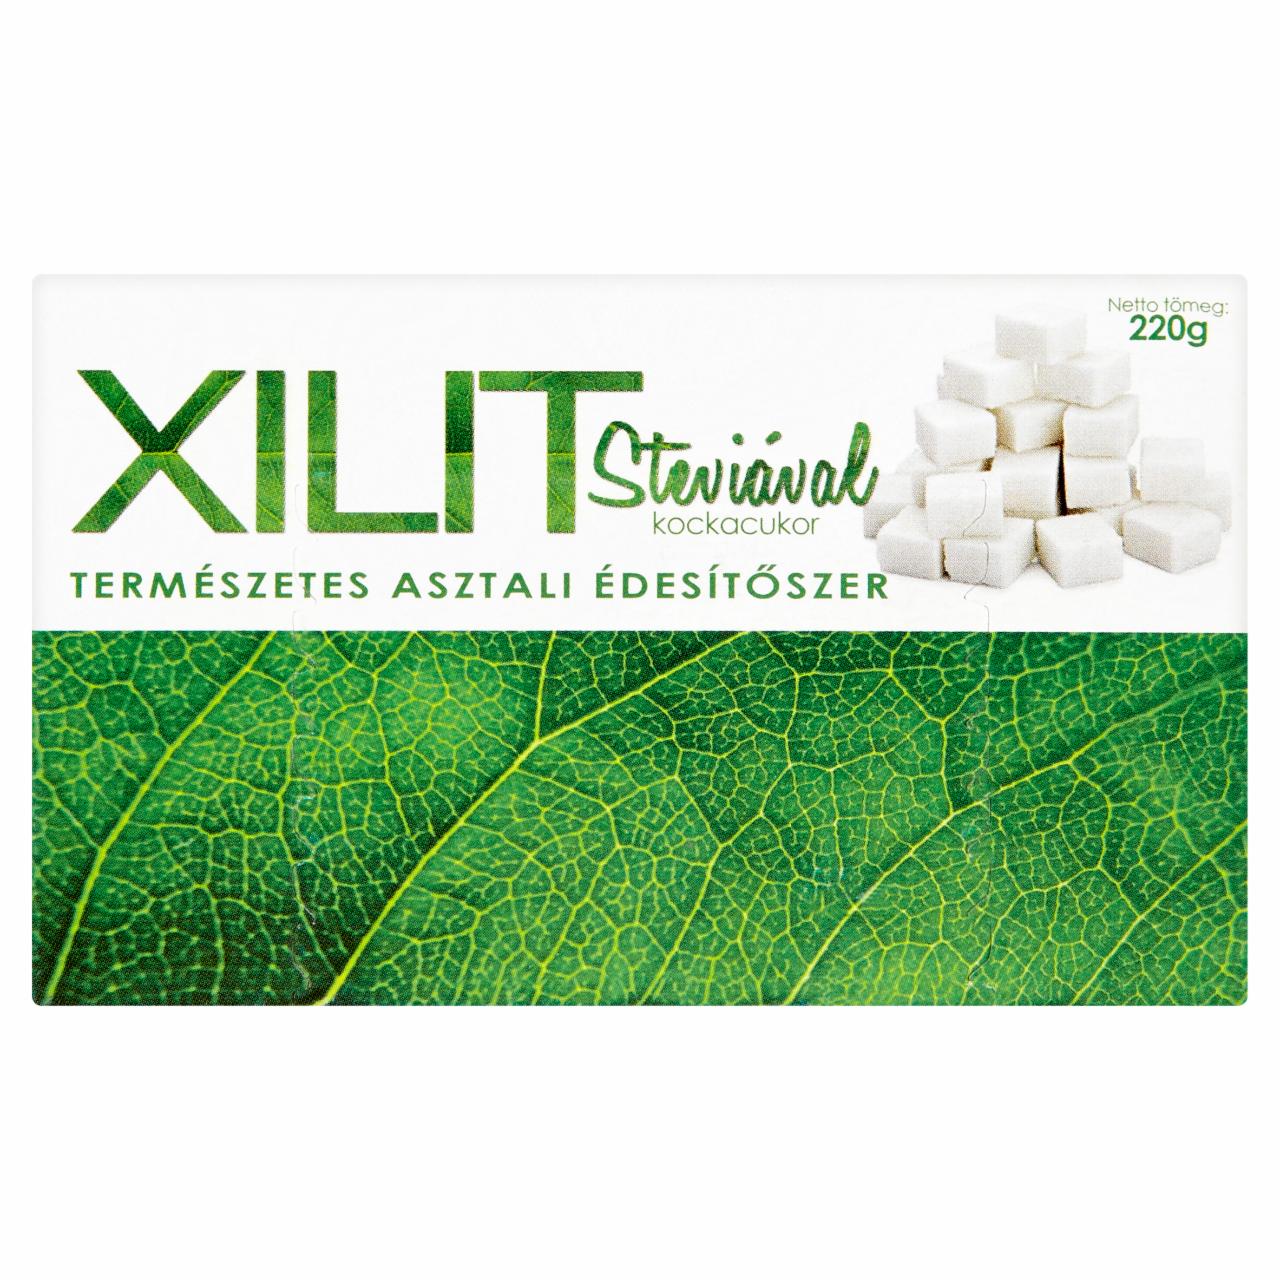 Képek - Xilit kockacukor steviával 220 g